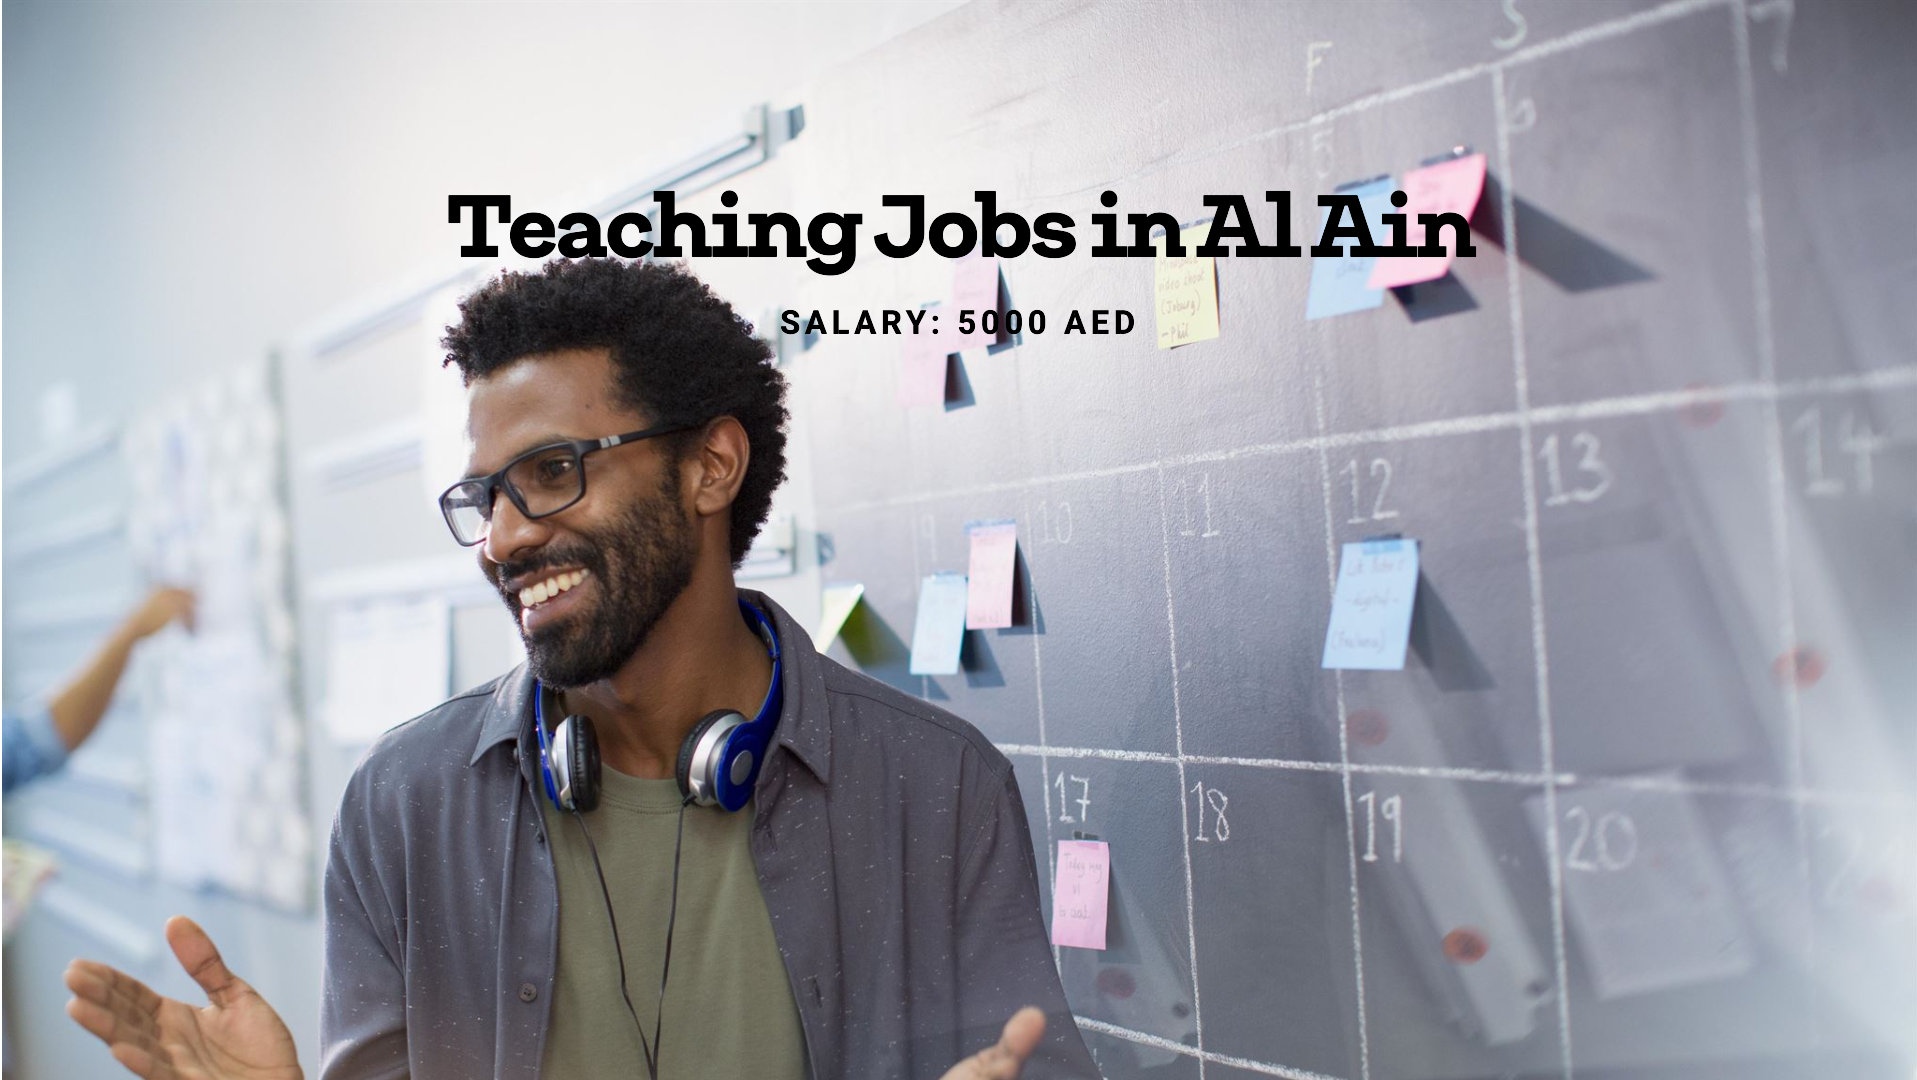 teacher jobs in al ain with salary 5000 AED